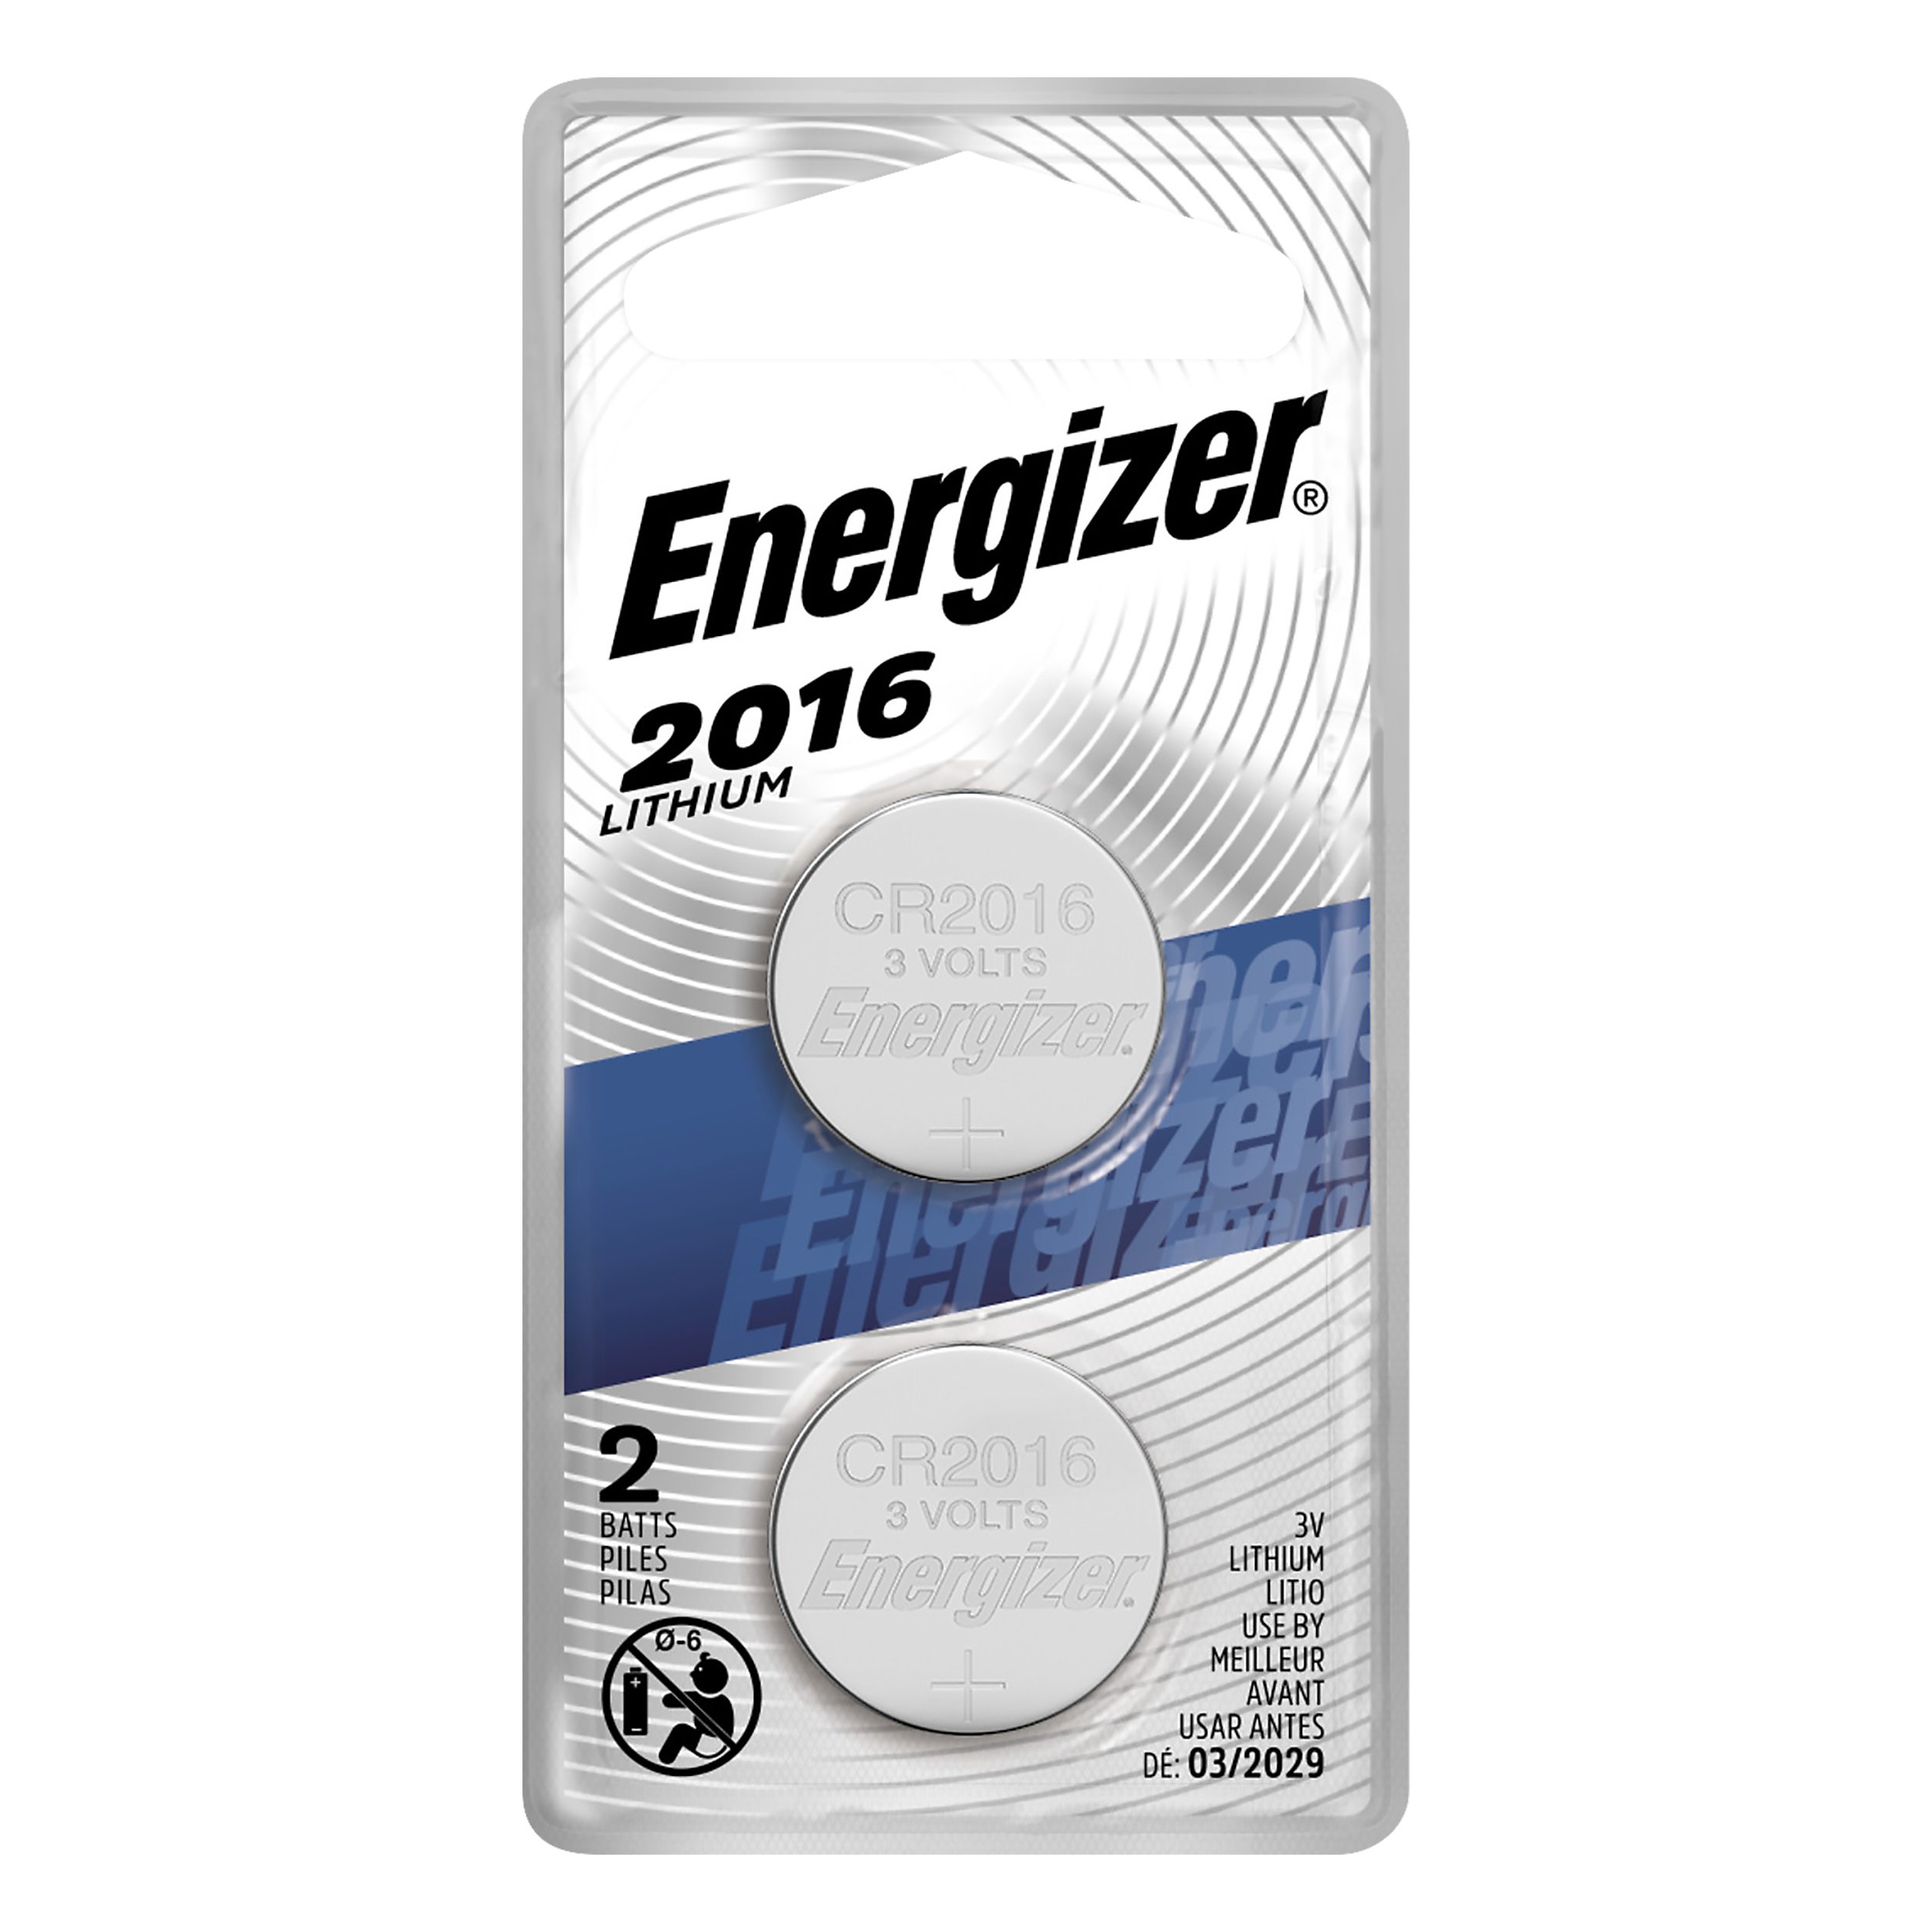 SB-T11 DL2016 Energizer 2016 Battery 3V Lithium Coin BR2016 ECR2016 